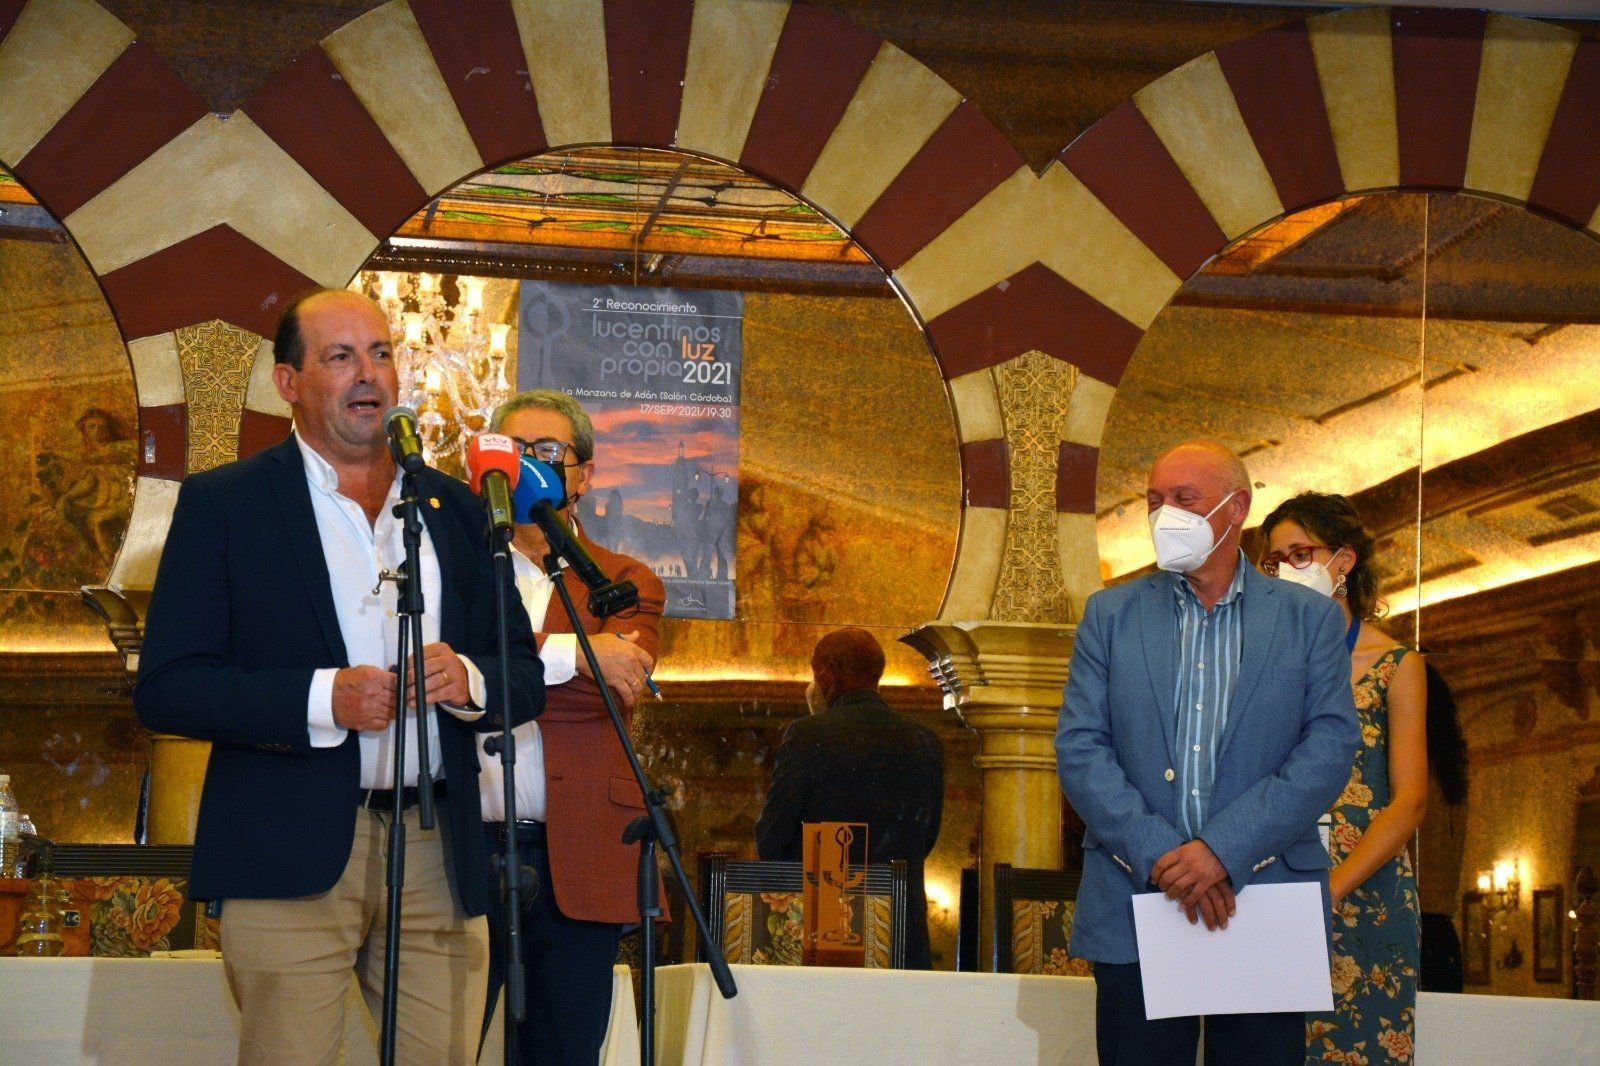 GALERÍA: Entregados los reconocimientos de la segunda edición de los premios "Lucentinos con luz propia", instituidos por el Centro Comercial Abierto